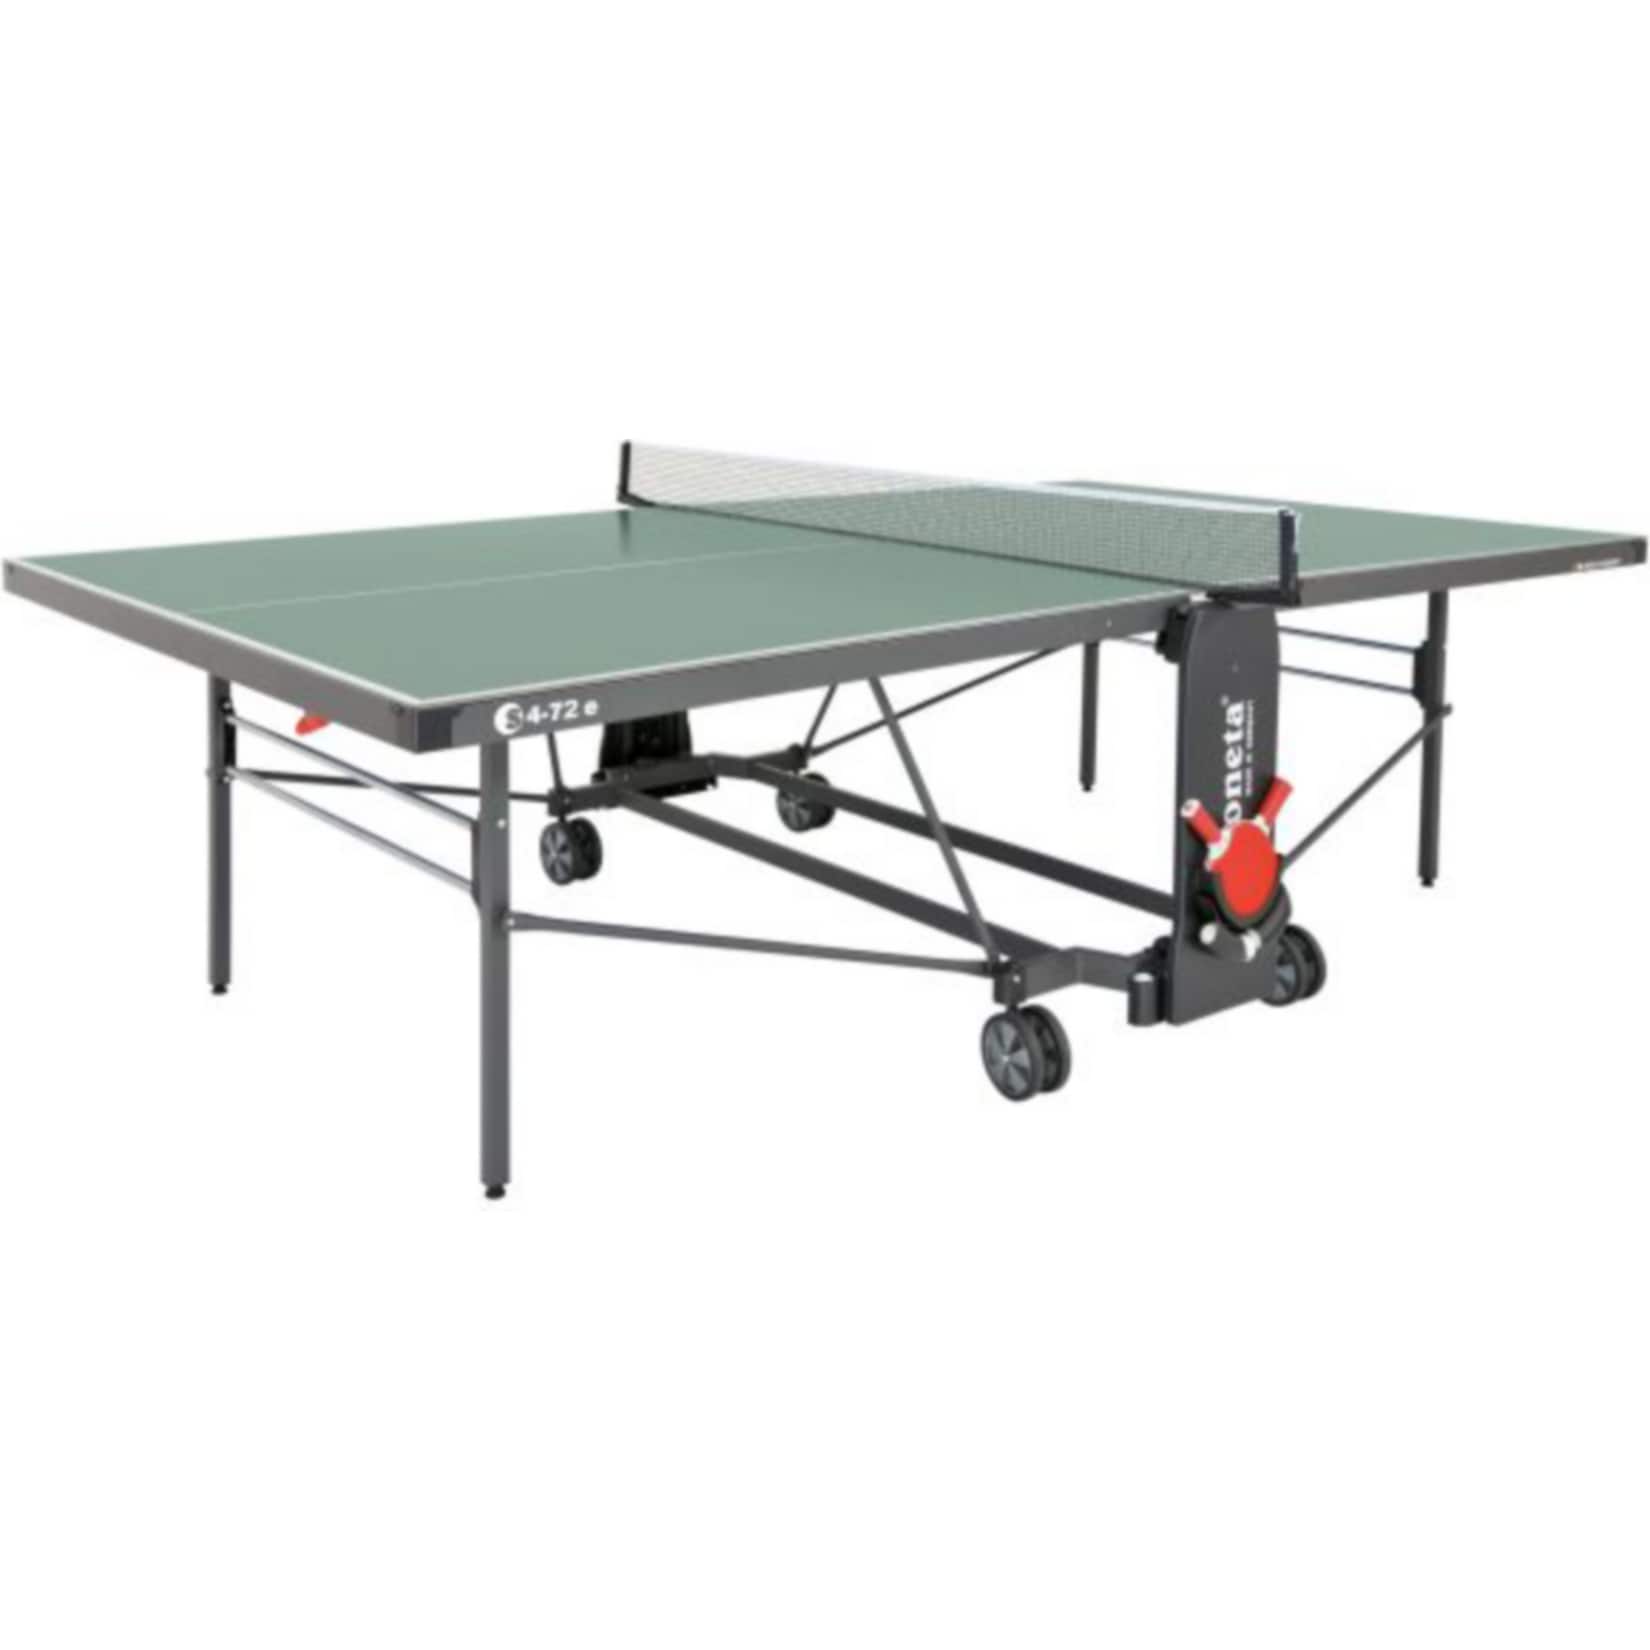 SPONETA S 4-72 e ExpertLine Outdoor-Tischtennis-Tisch, grün